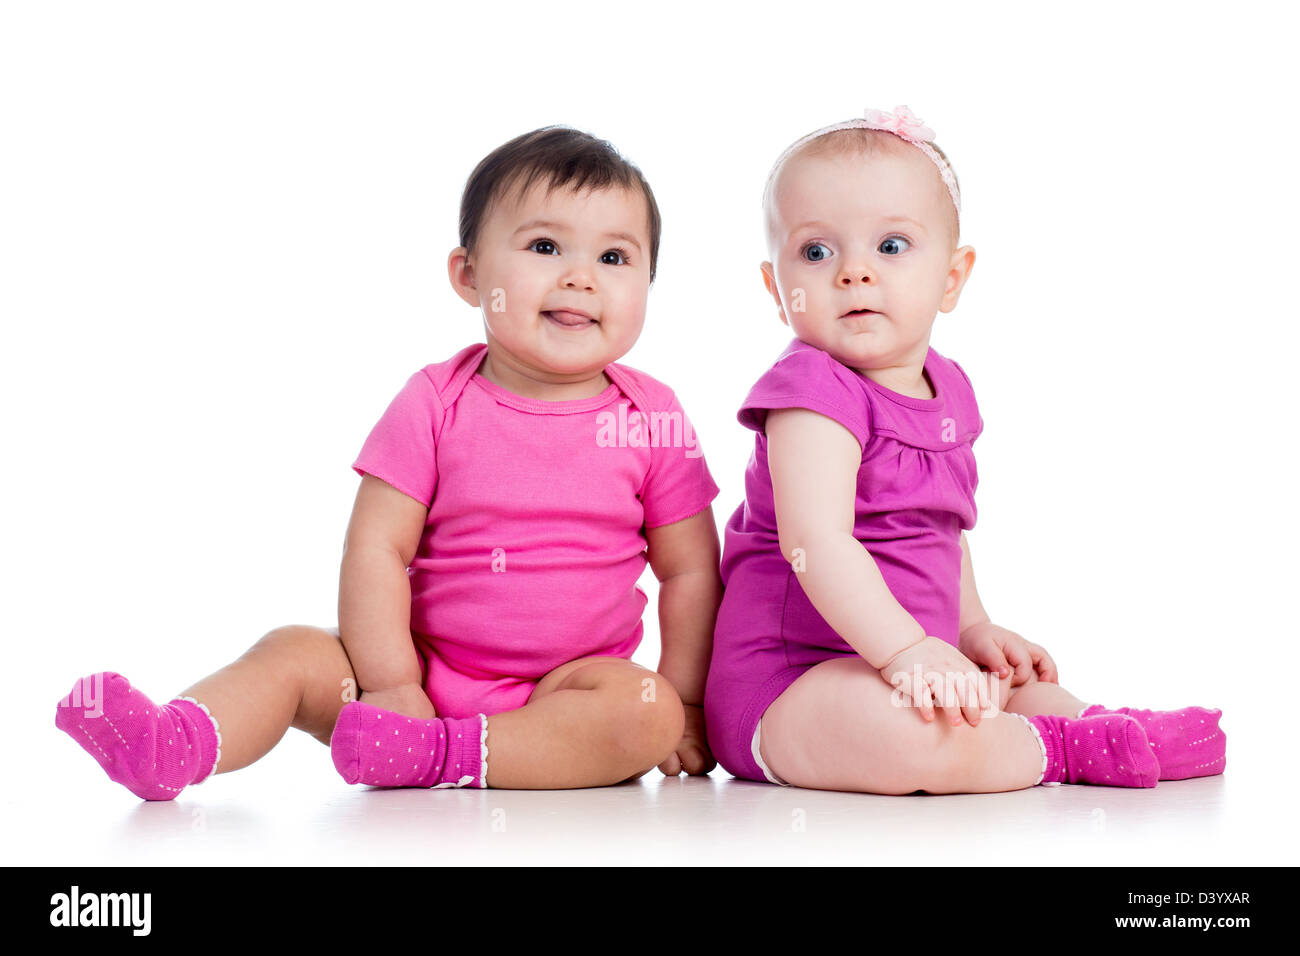 Bambine belle immagini e fotografie stock ad alta risoluzione - Alamy